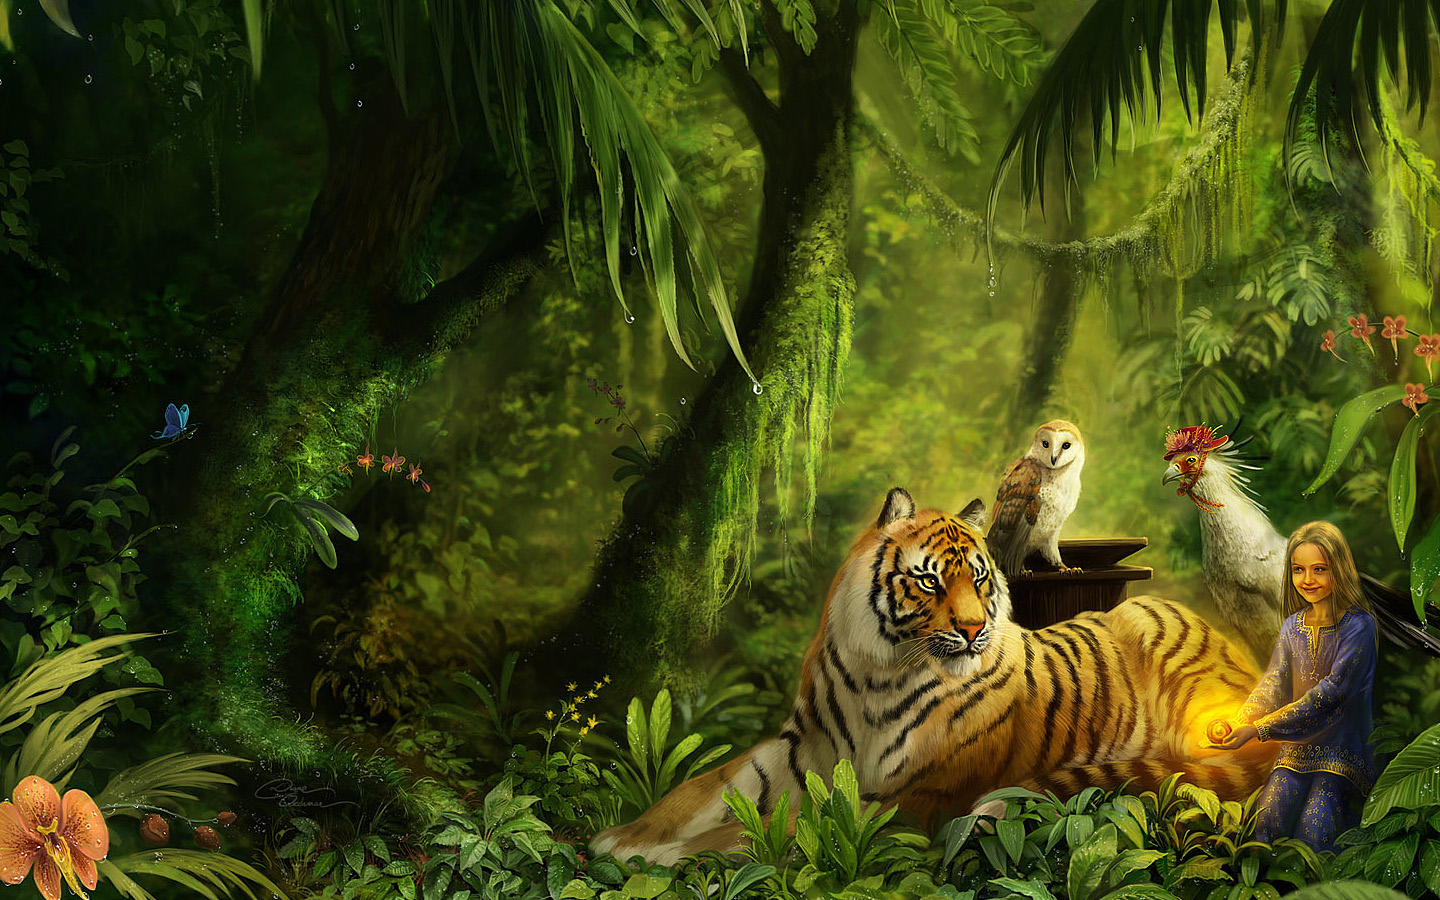 migliore carta da parati animale,tigre,tigre del bengala,giungla,tigre siberiana,natura